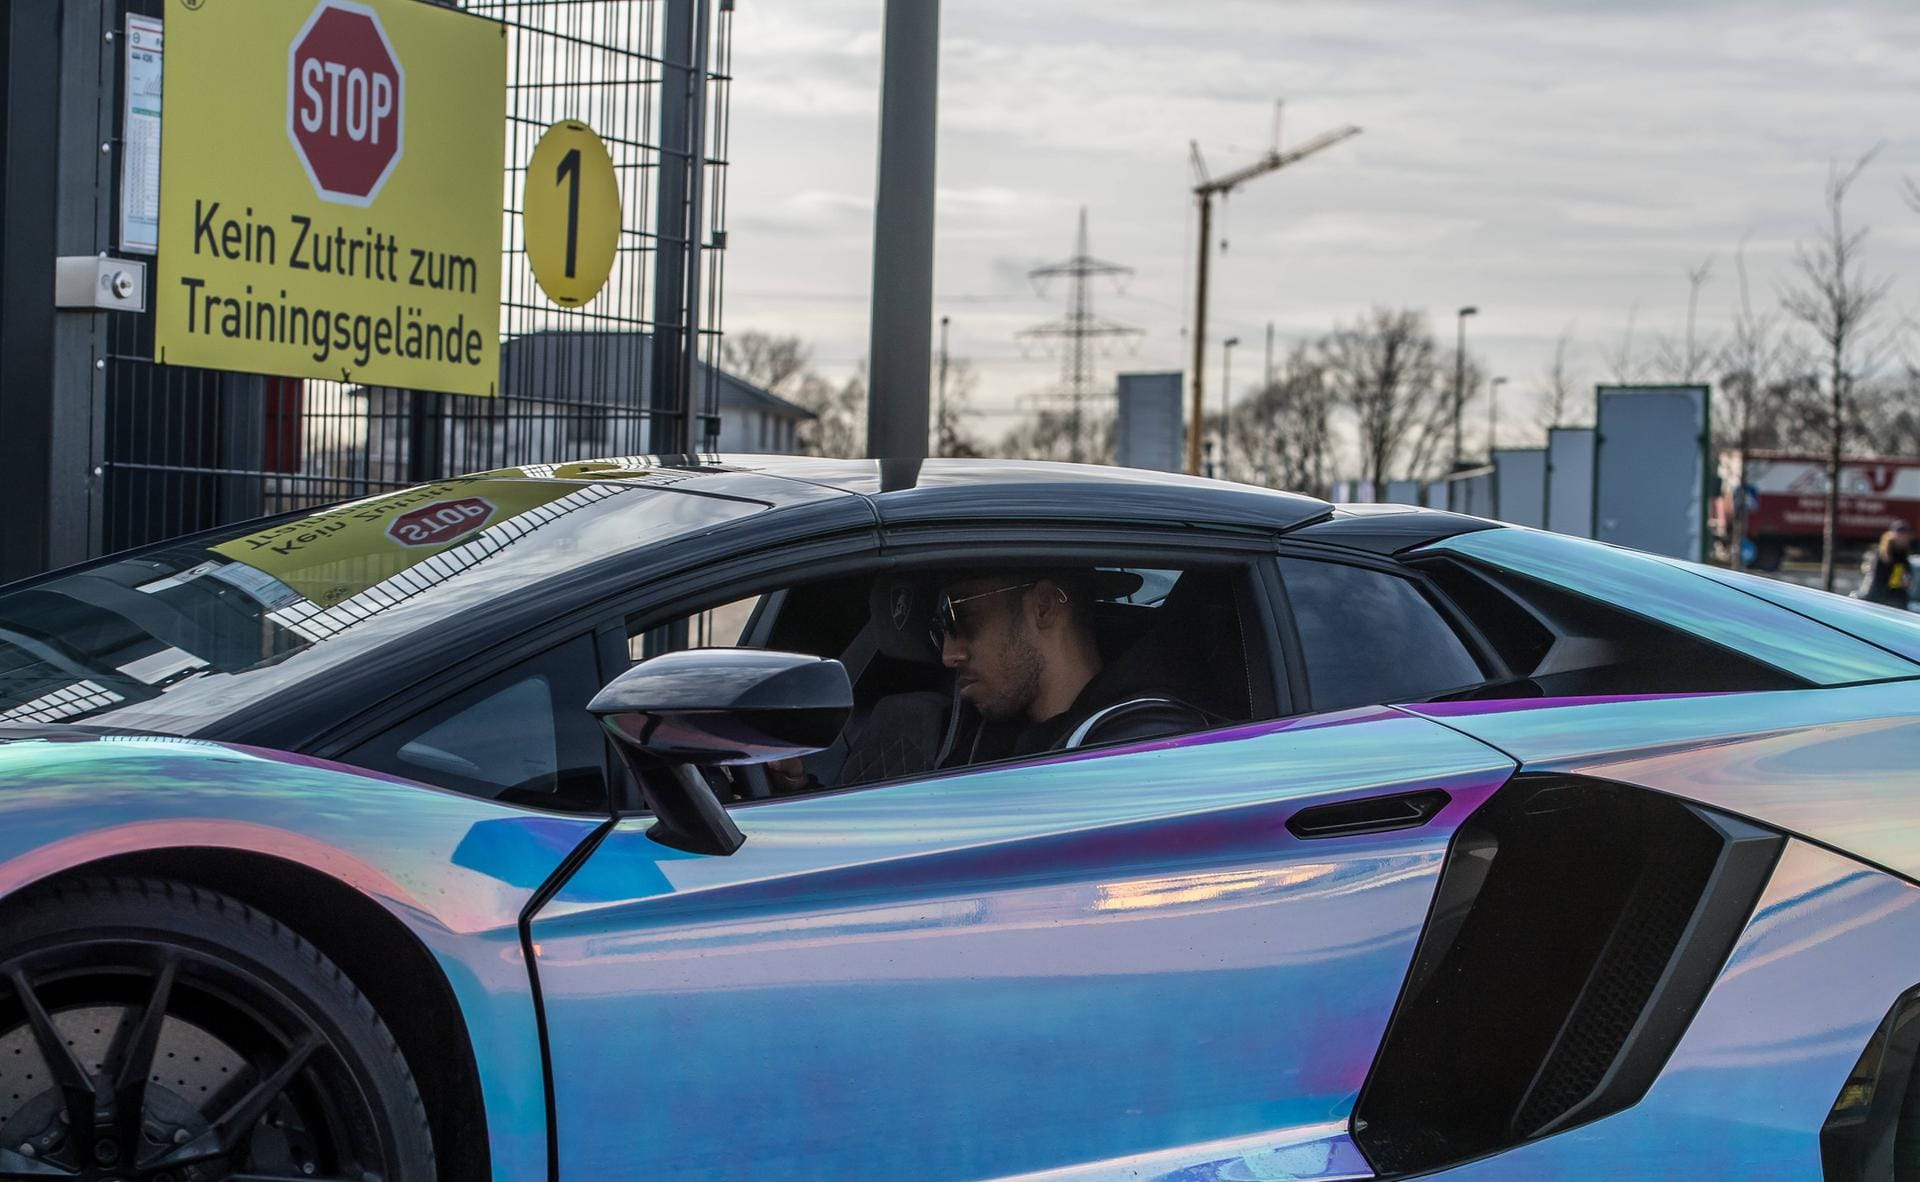 Ex-BVB-Star Pierre-Emerick Aubameyang ist ein Fan von auffälligen Autos. Am bekanntesten ist wohl sein Lamborghini Huracan mit dem er zu Dortmunder Zeiten noch auf den Straßen Deutschlands fuhr. Kostenpunkt: mehr als 250.000€.